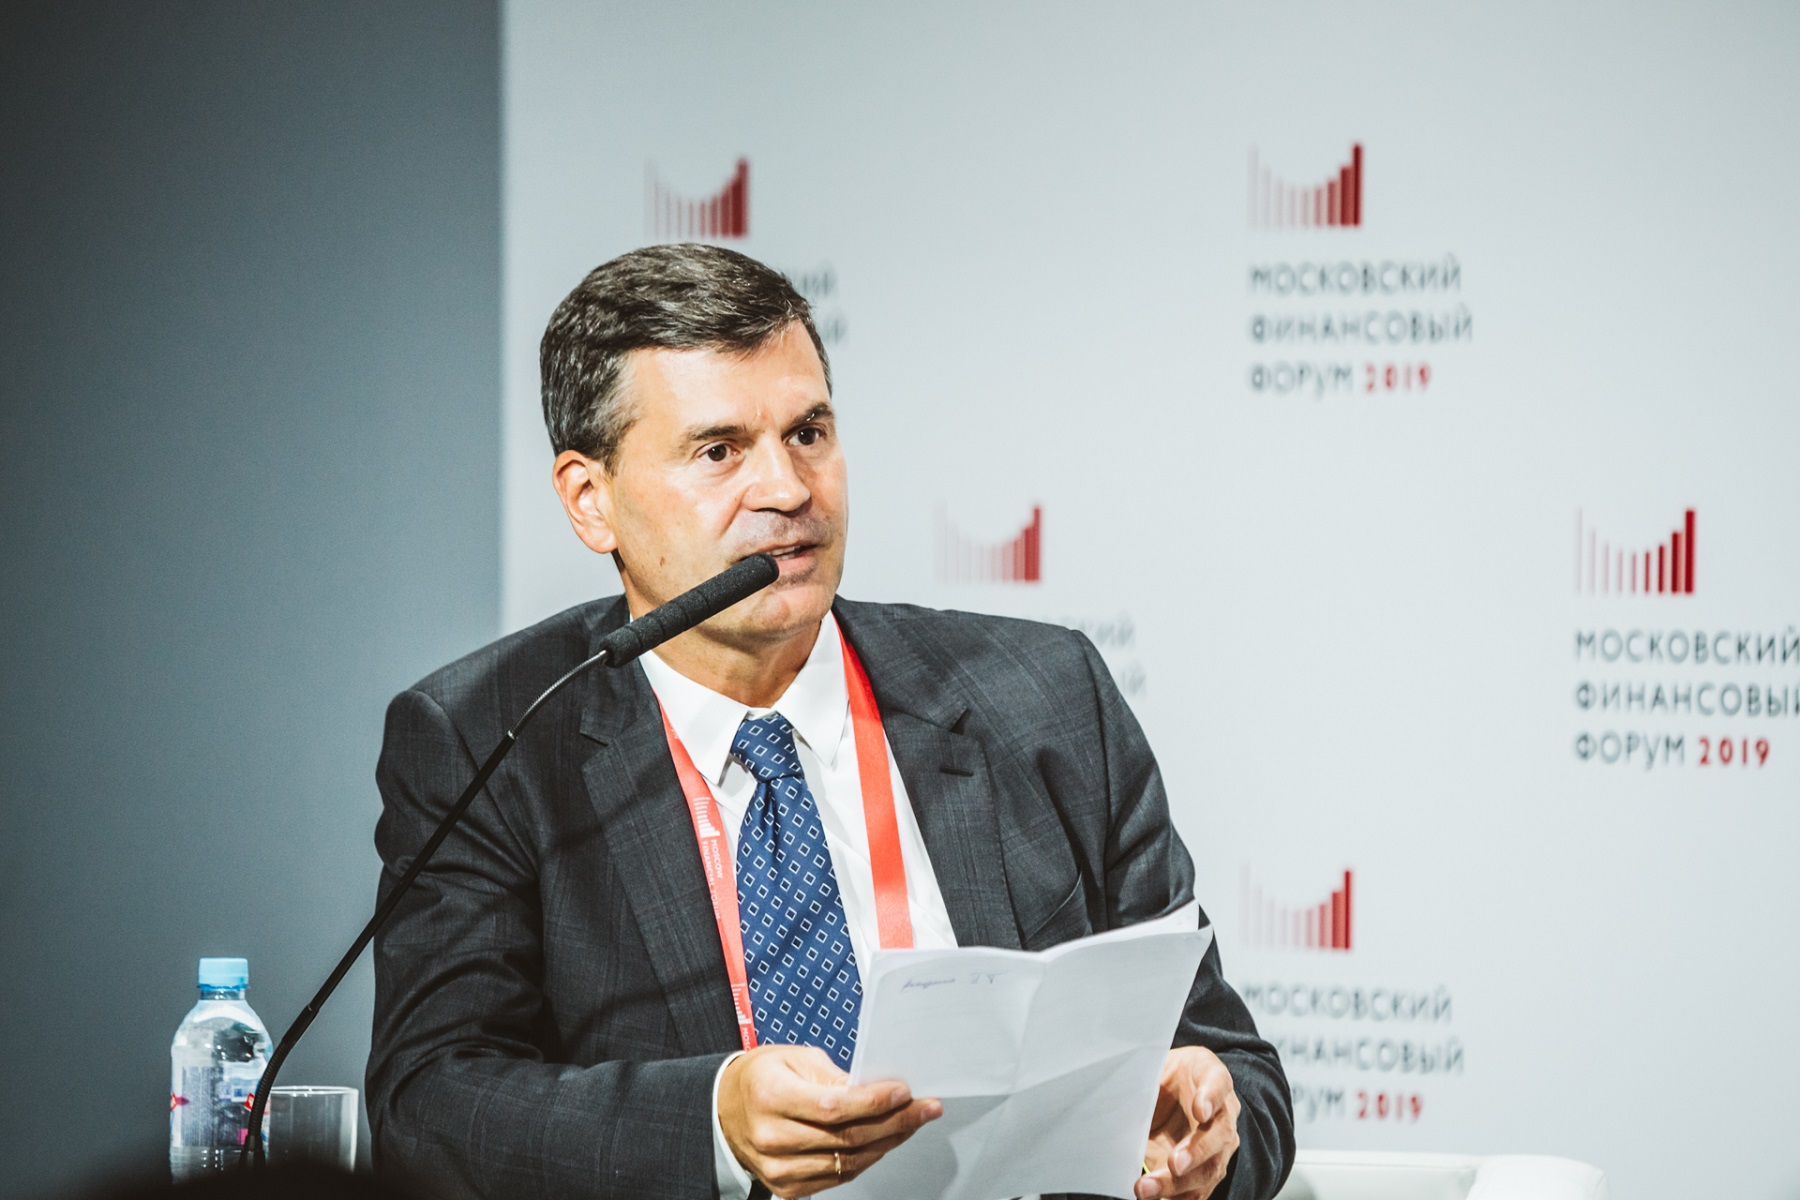 Алексей Комиссаров провел сессию на тему самореализации и раскрытия талантов на Московском финансовом форуме